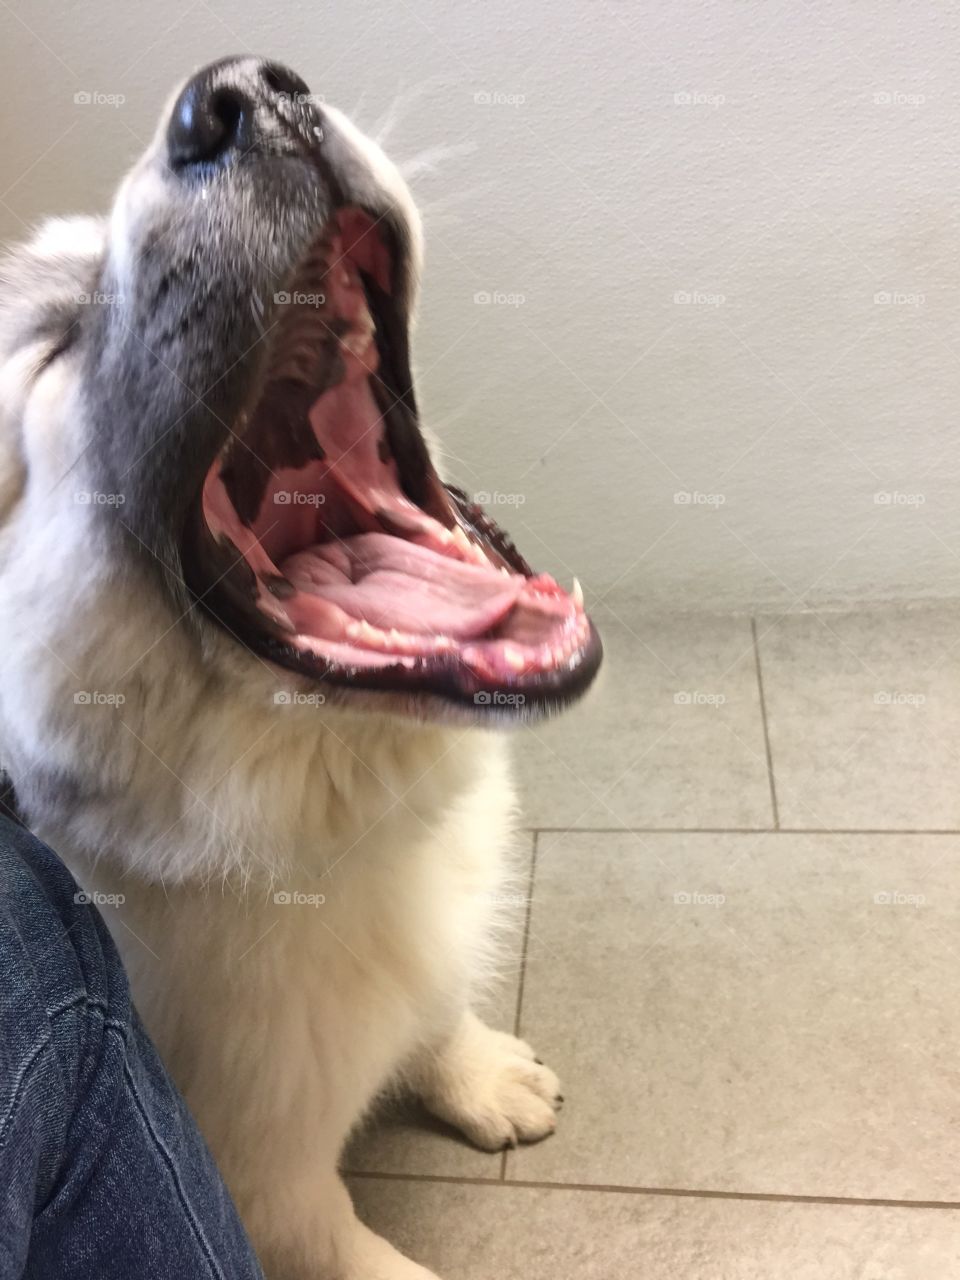 Big puppy yawn